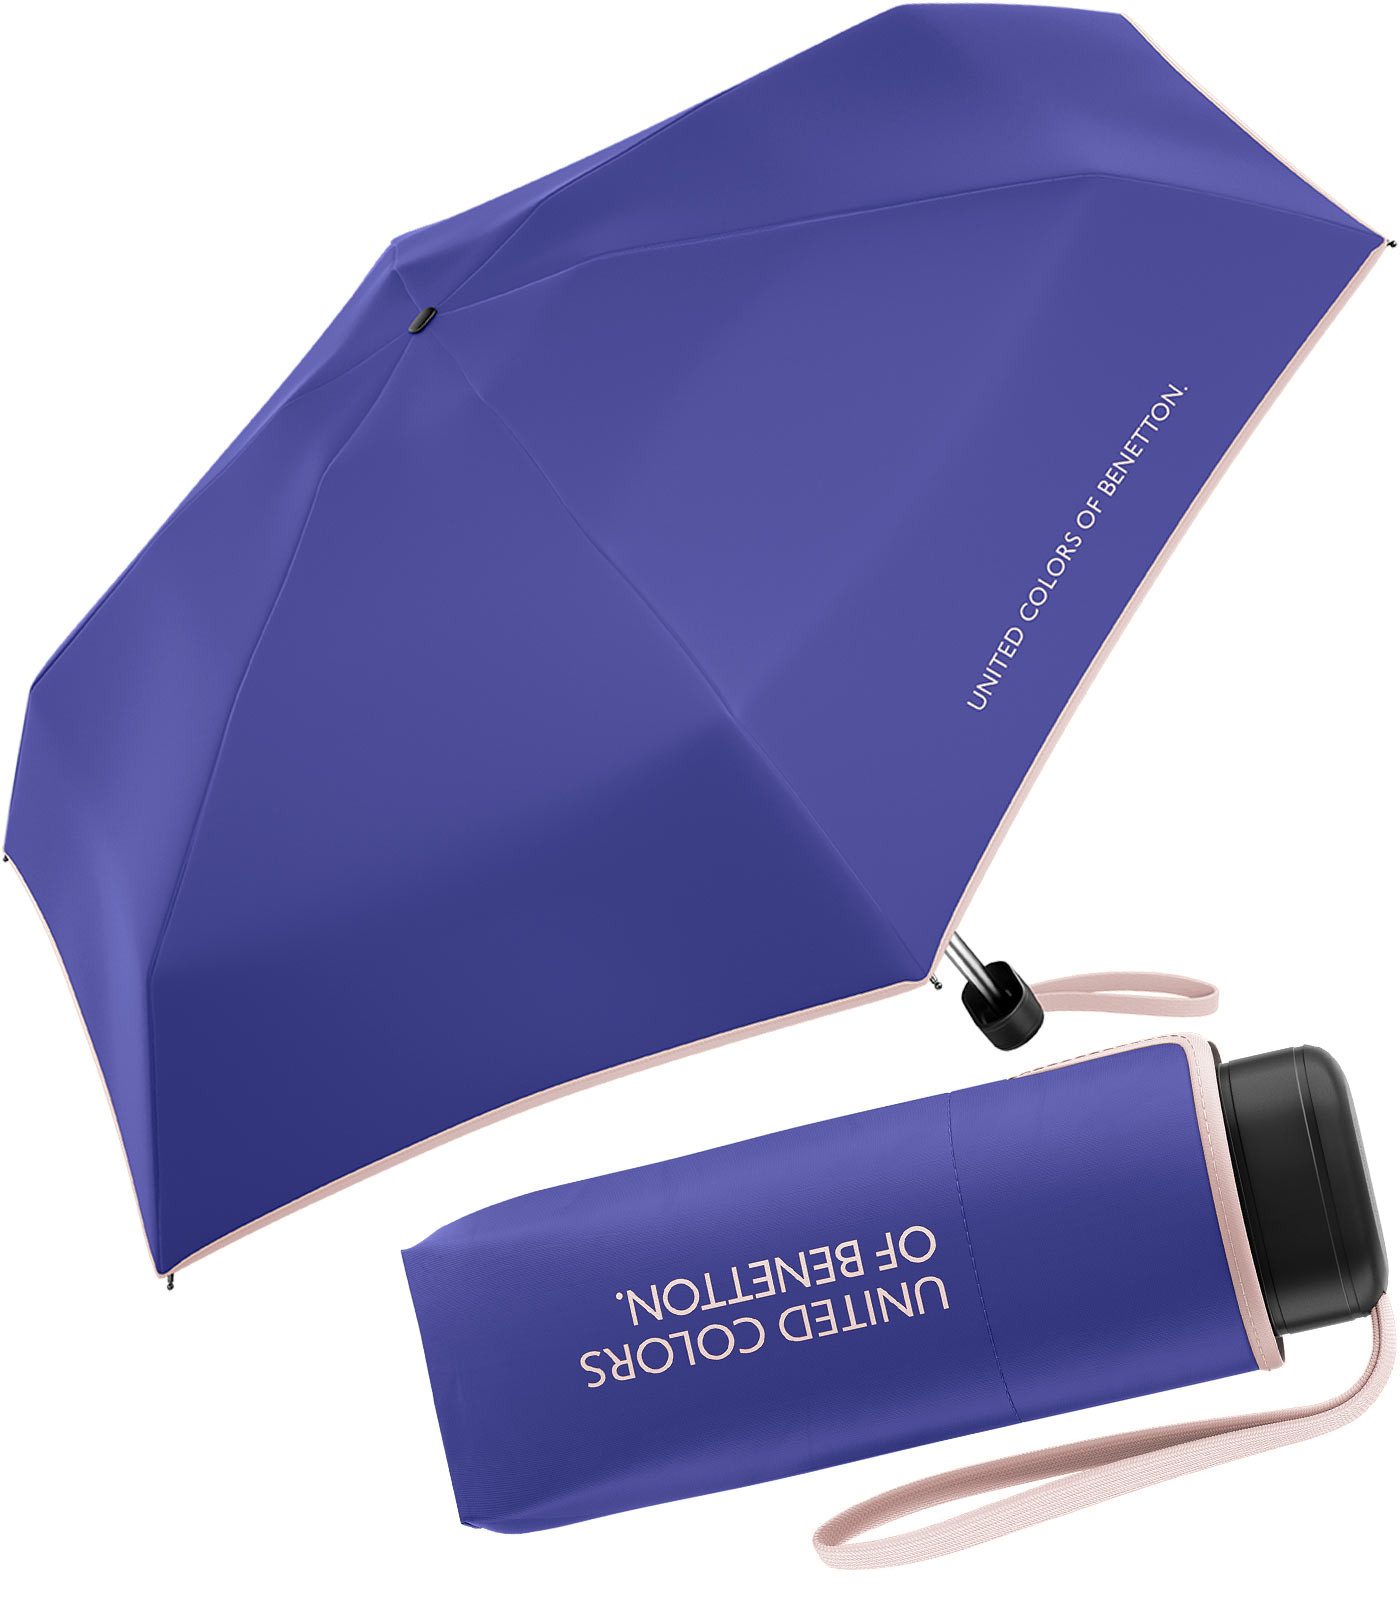 United Colors of Benetton Taschenregenschirm Ultra Mini Flat FS 2024 - purple opulence, leuchtende Modefarben mit kontrastreichem Saum